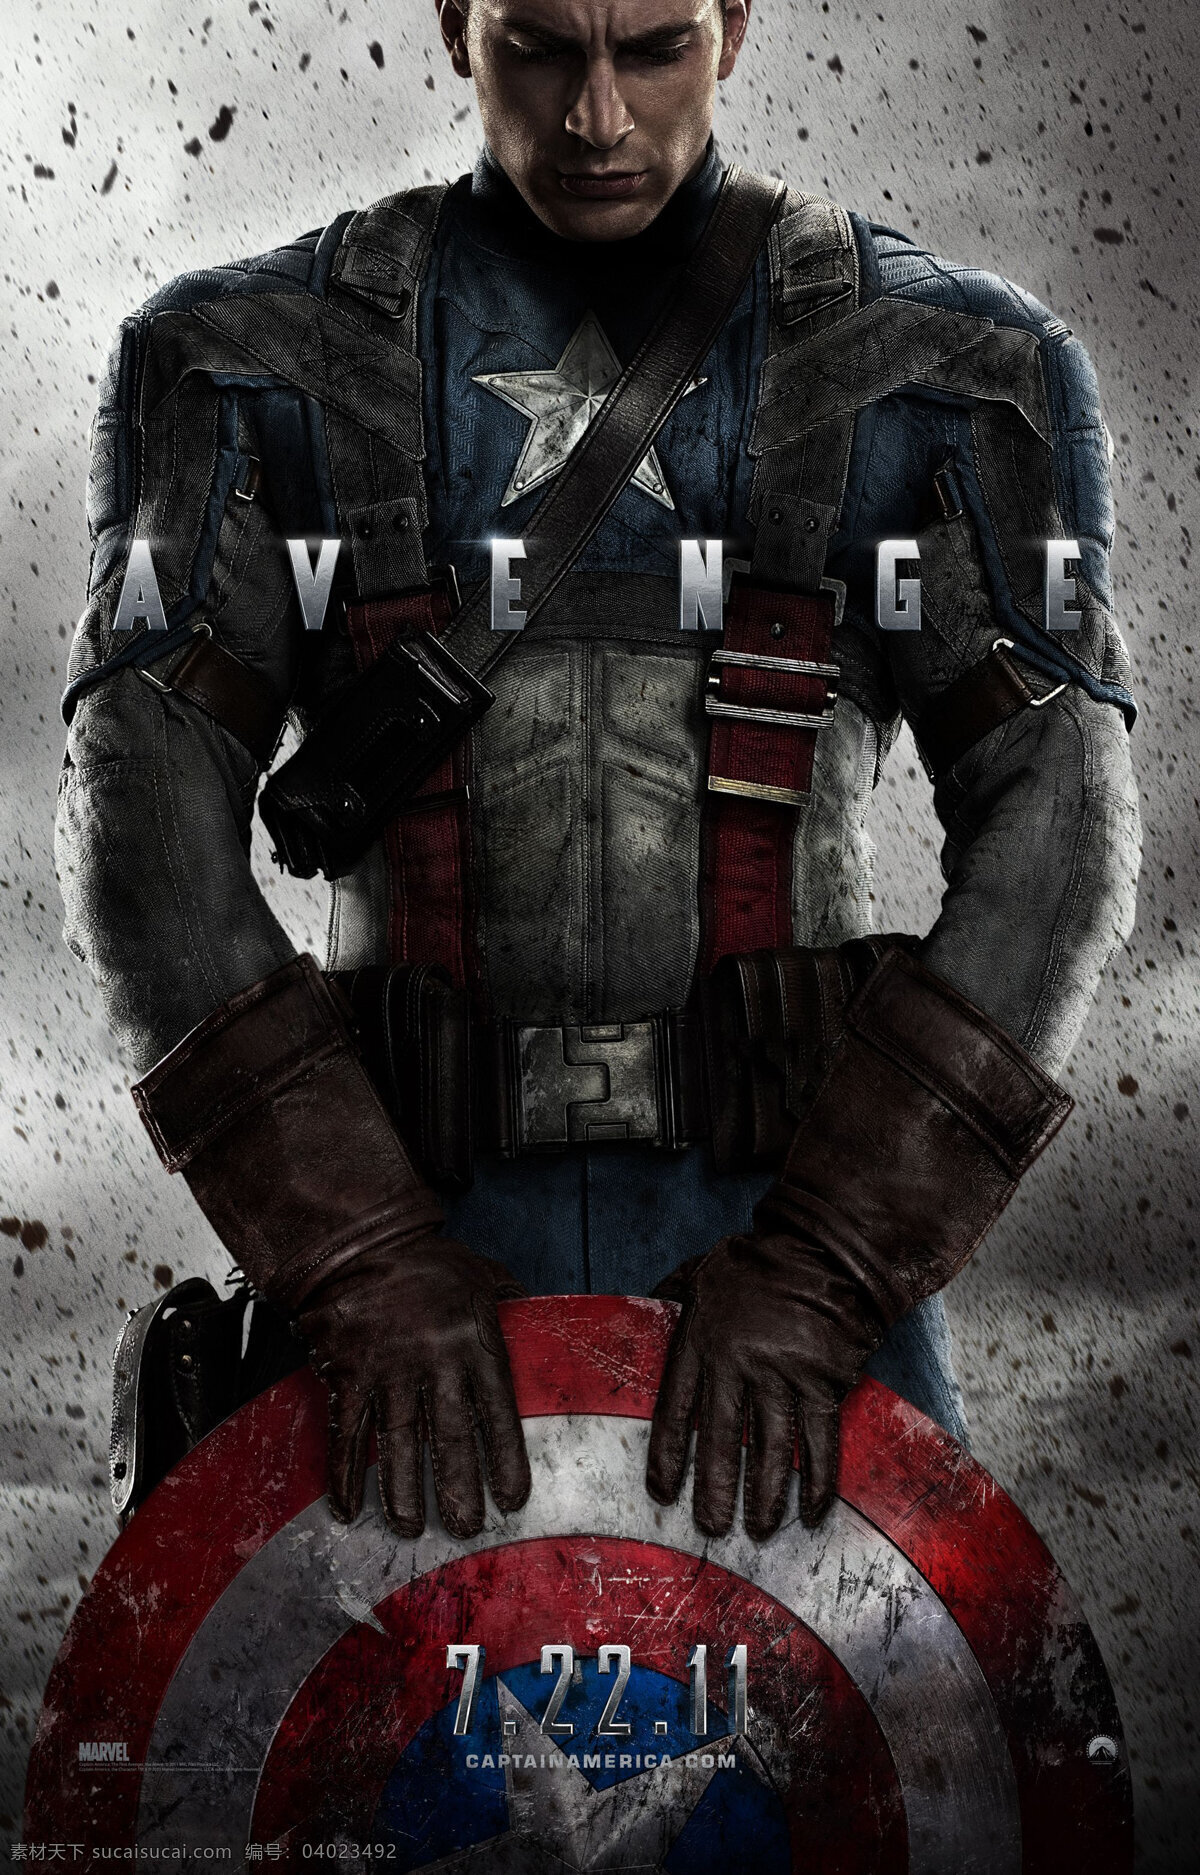 美国队长 电影海报 战士 战斗 英雄 英雄形象 英雄角色 英雄人物 惊悚 科幻 冒险 动作 影视娱乐 文化艺术